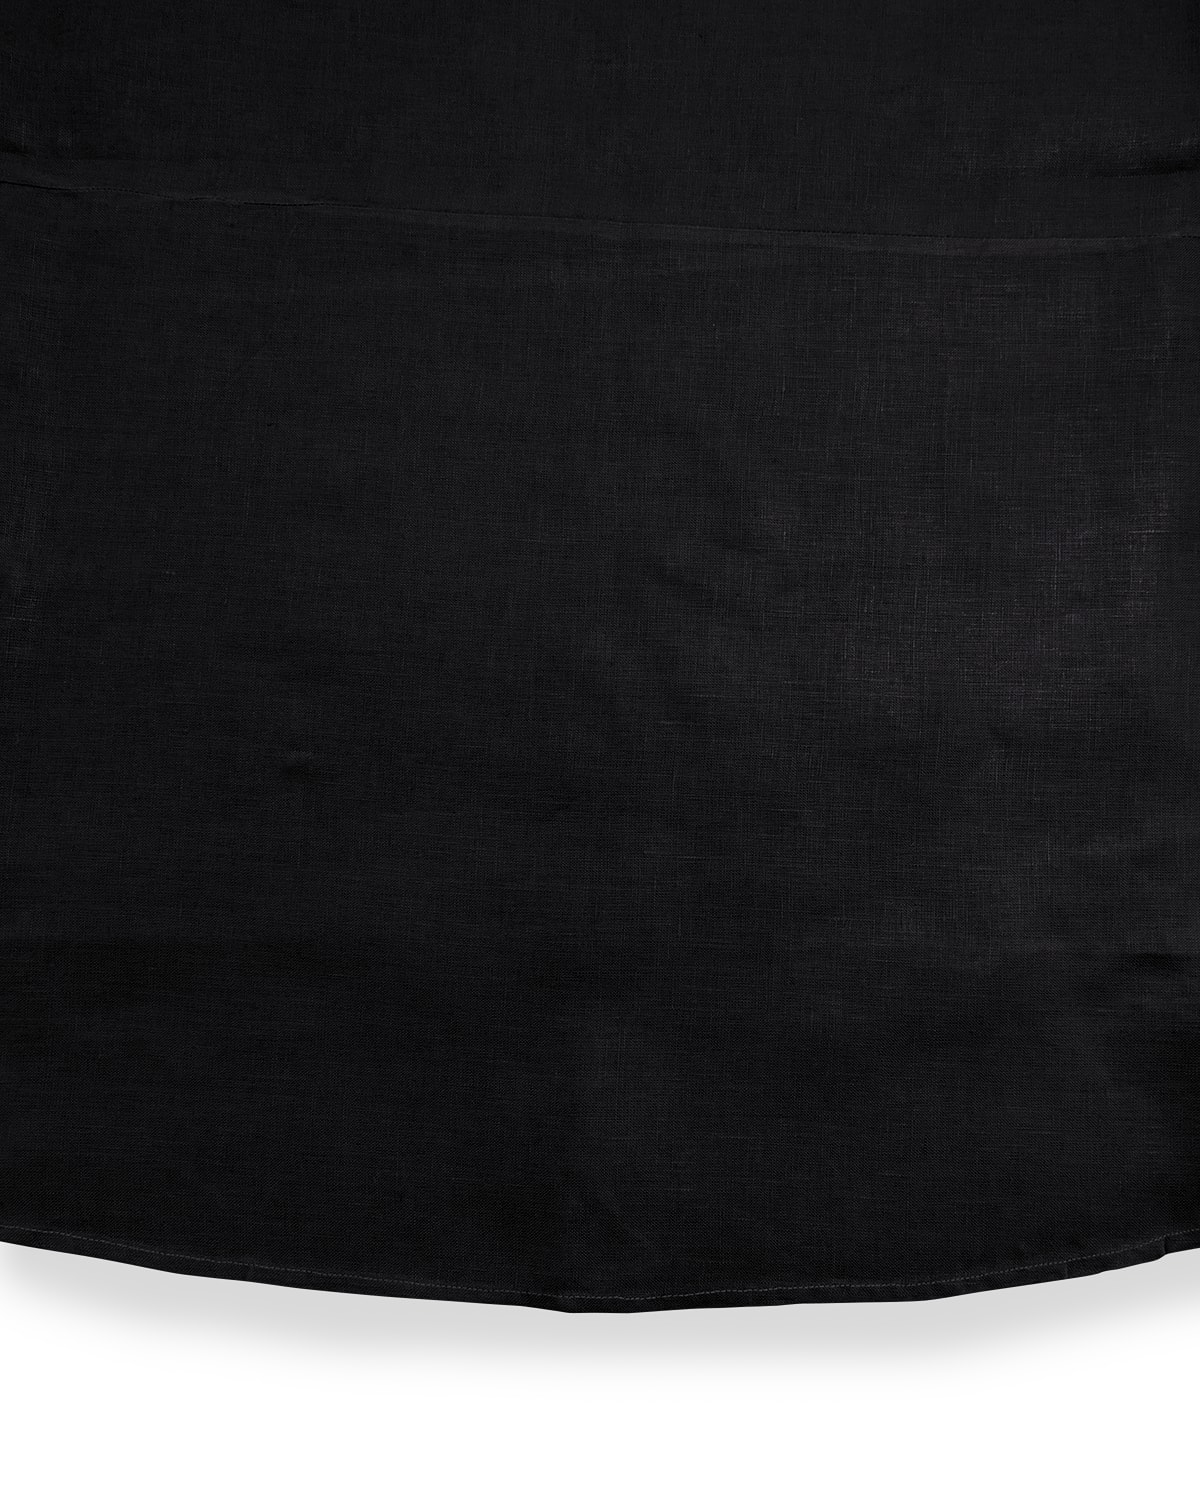 Shop Sferra Hemstitch Round Tablecloth, 90"dia. In Black